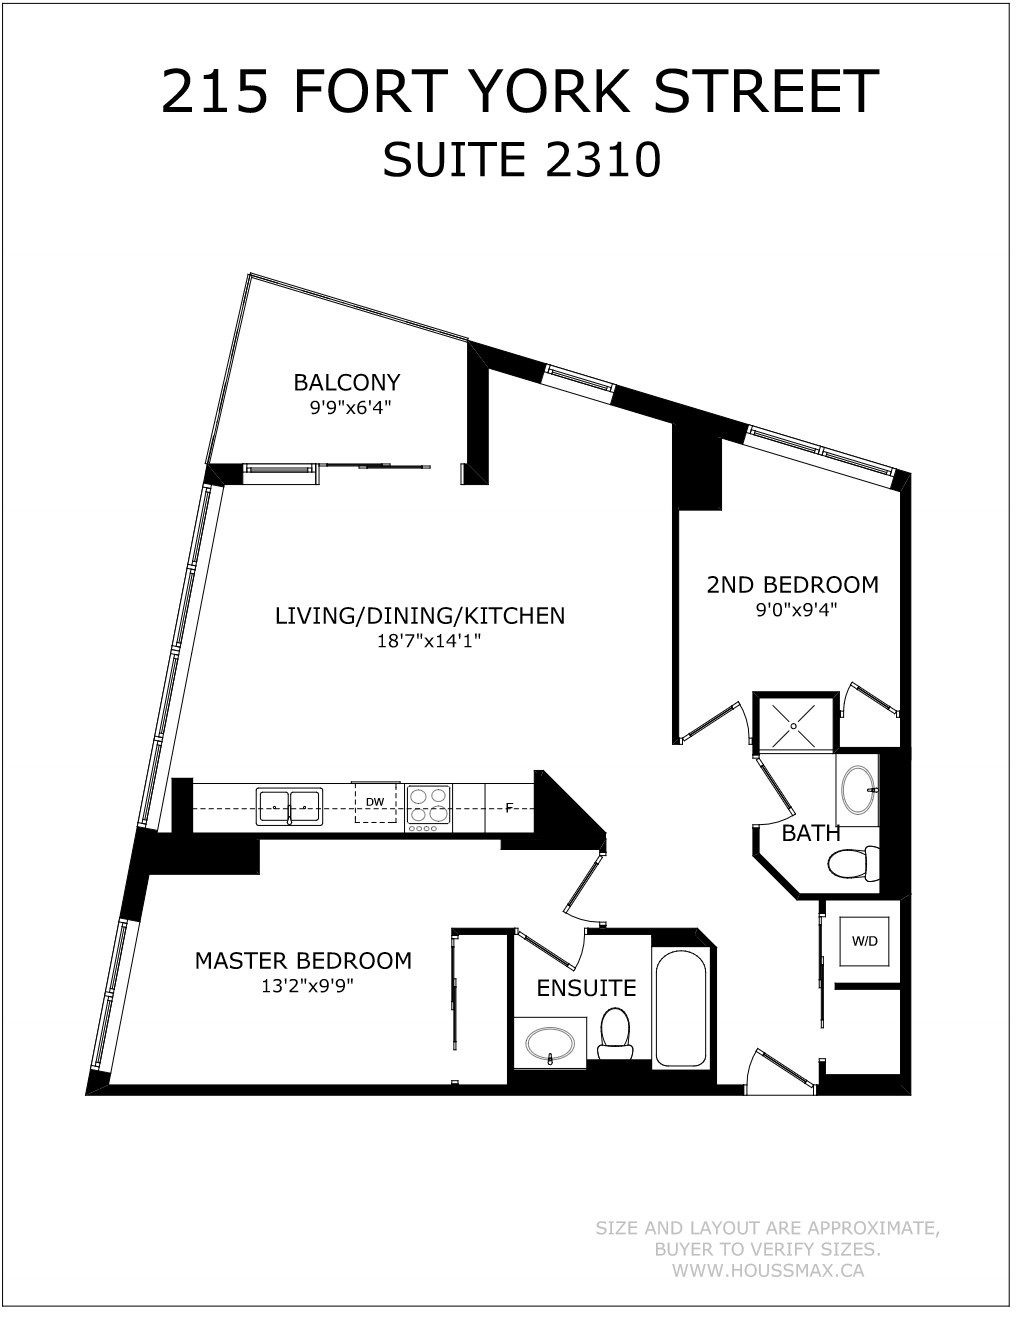 Floor plans for 215 Fort York Blvd Unit 2310.